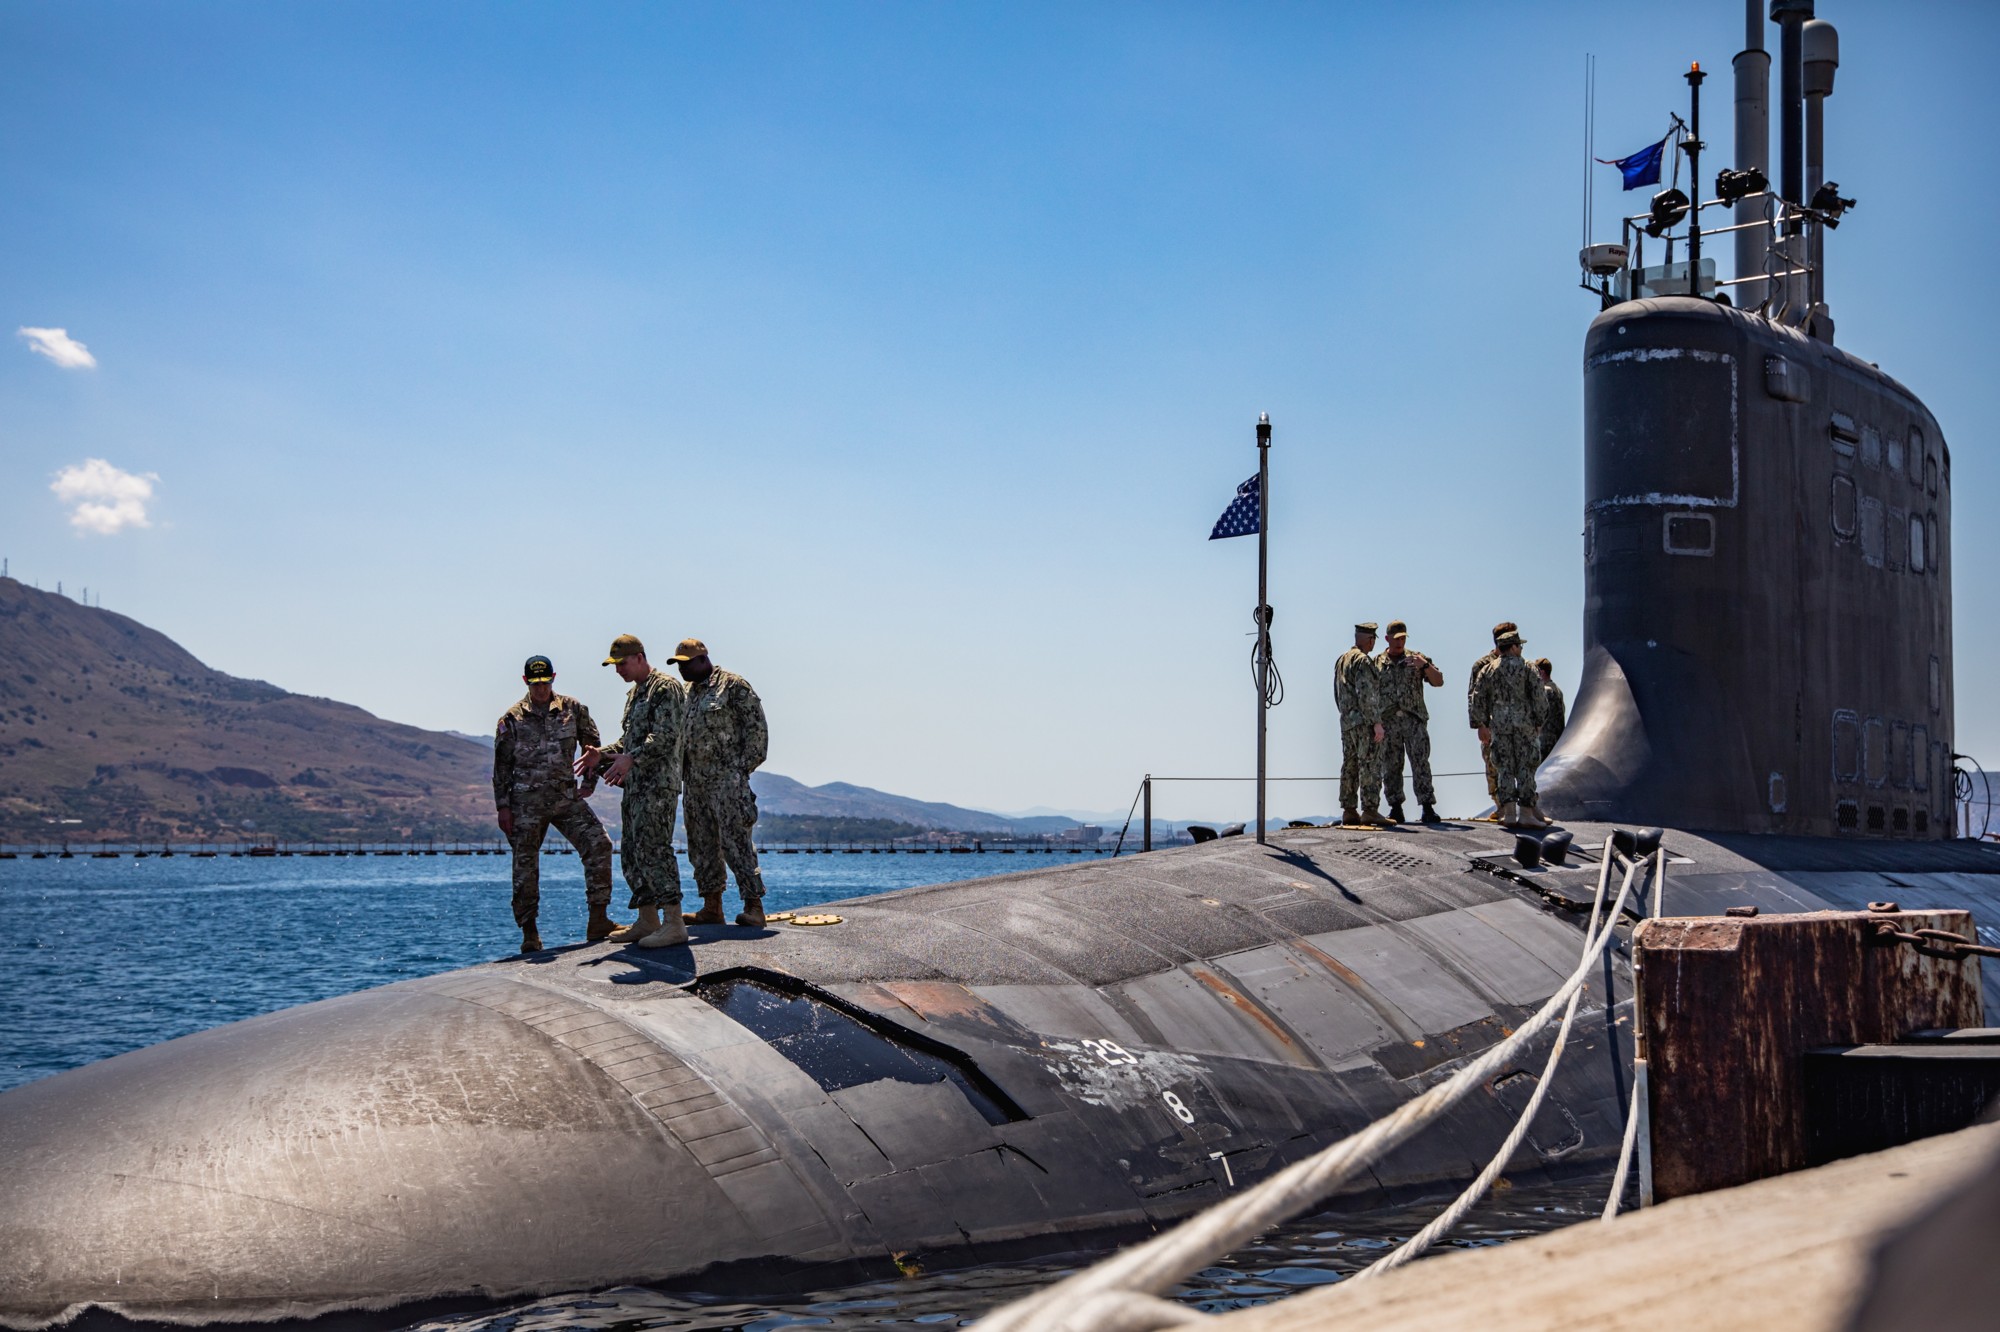 ssn-779 uss new mexico virginia class attack submarine us navy 56 souda bay nsa crete greece